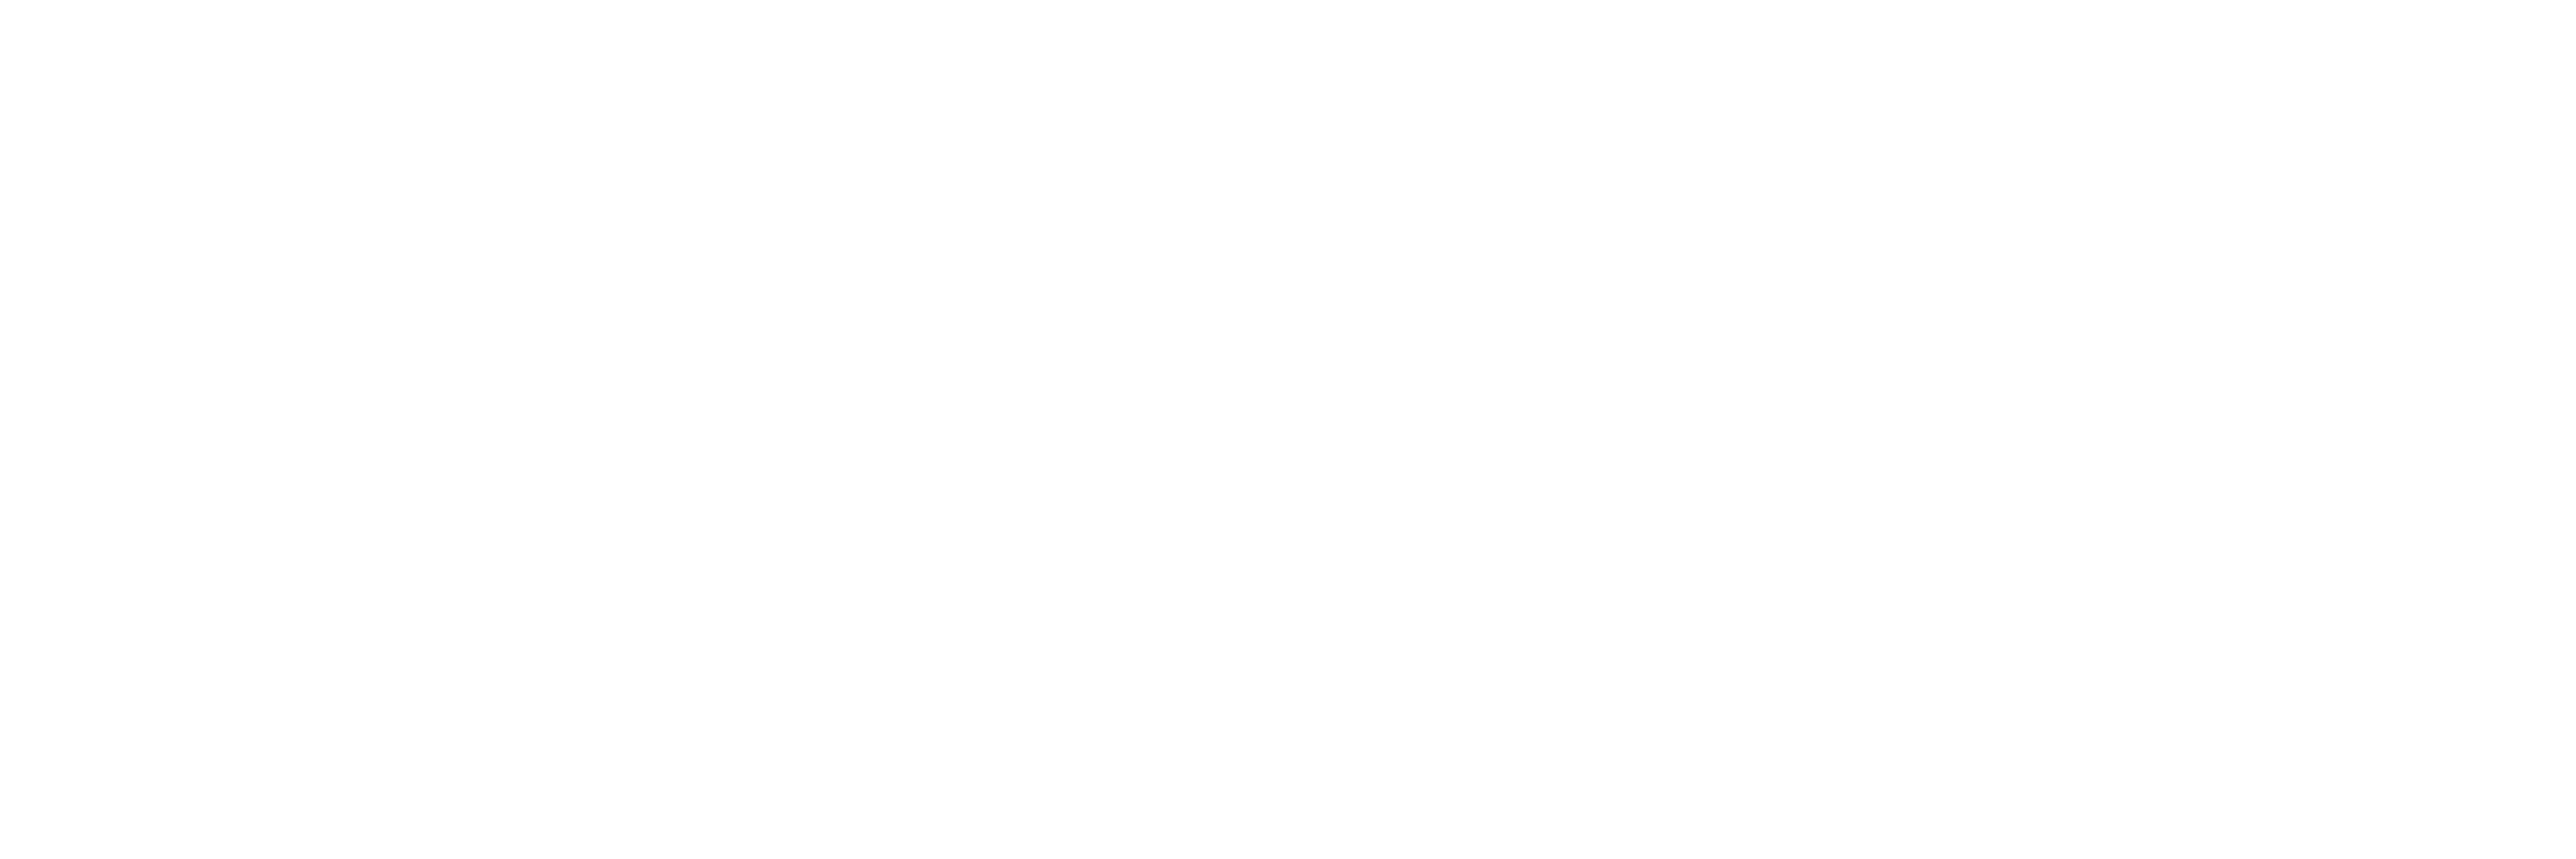 Immersiv logo horizontal dark background